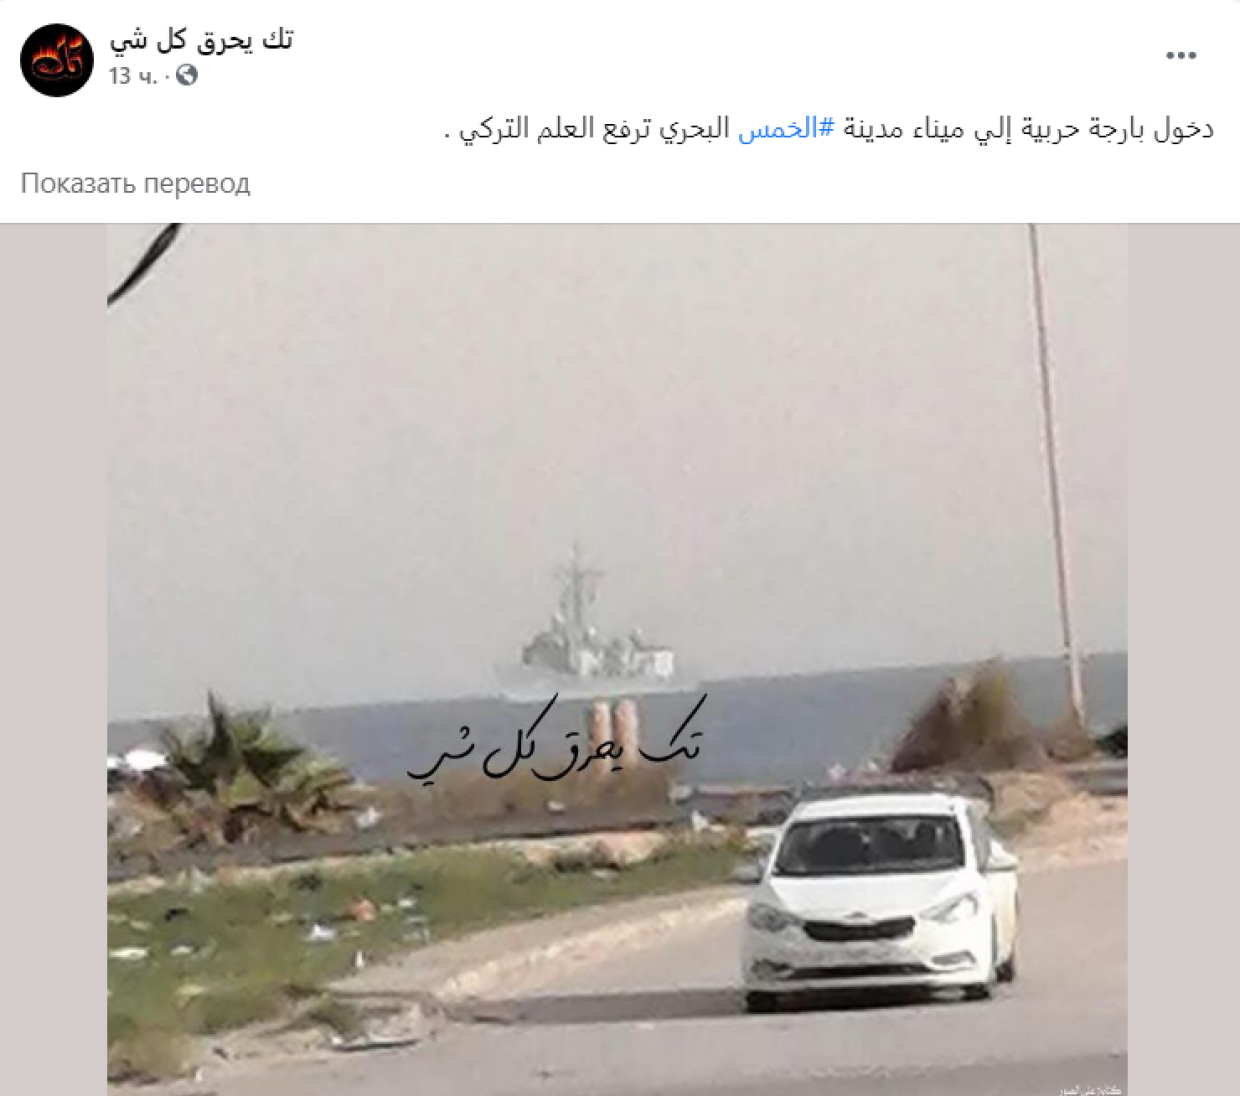 Военный корабль под турецким флагом вошел в порт города Хомс на севере Ливии